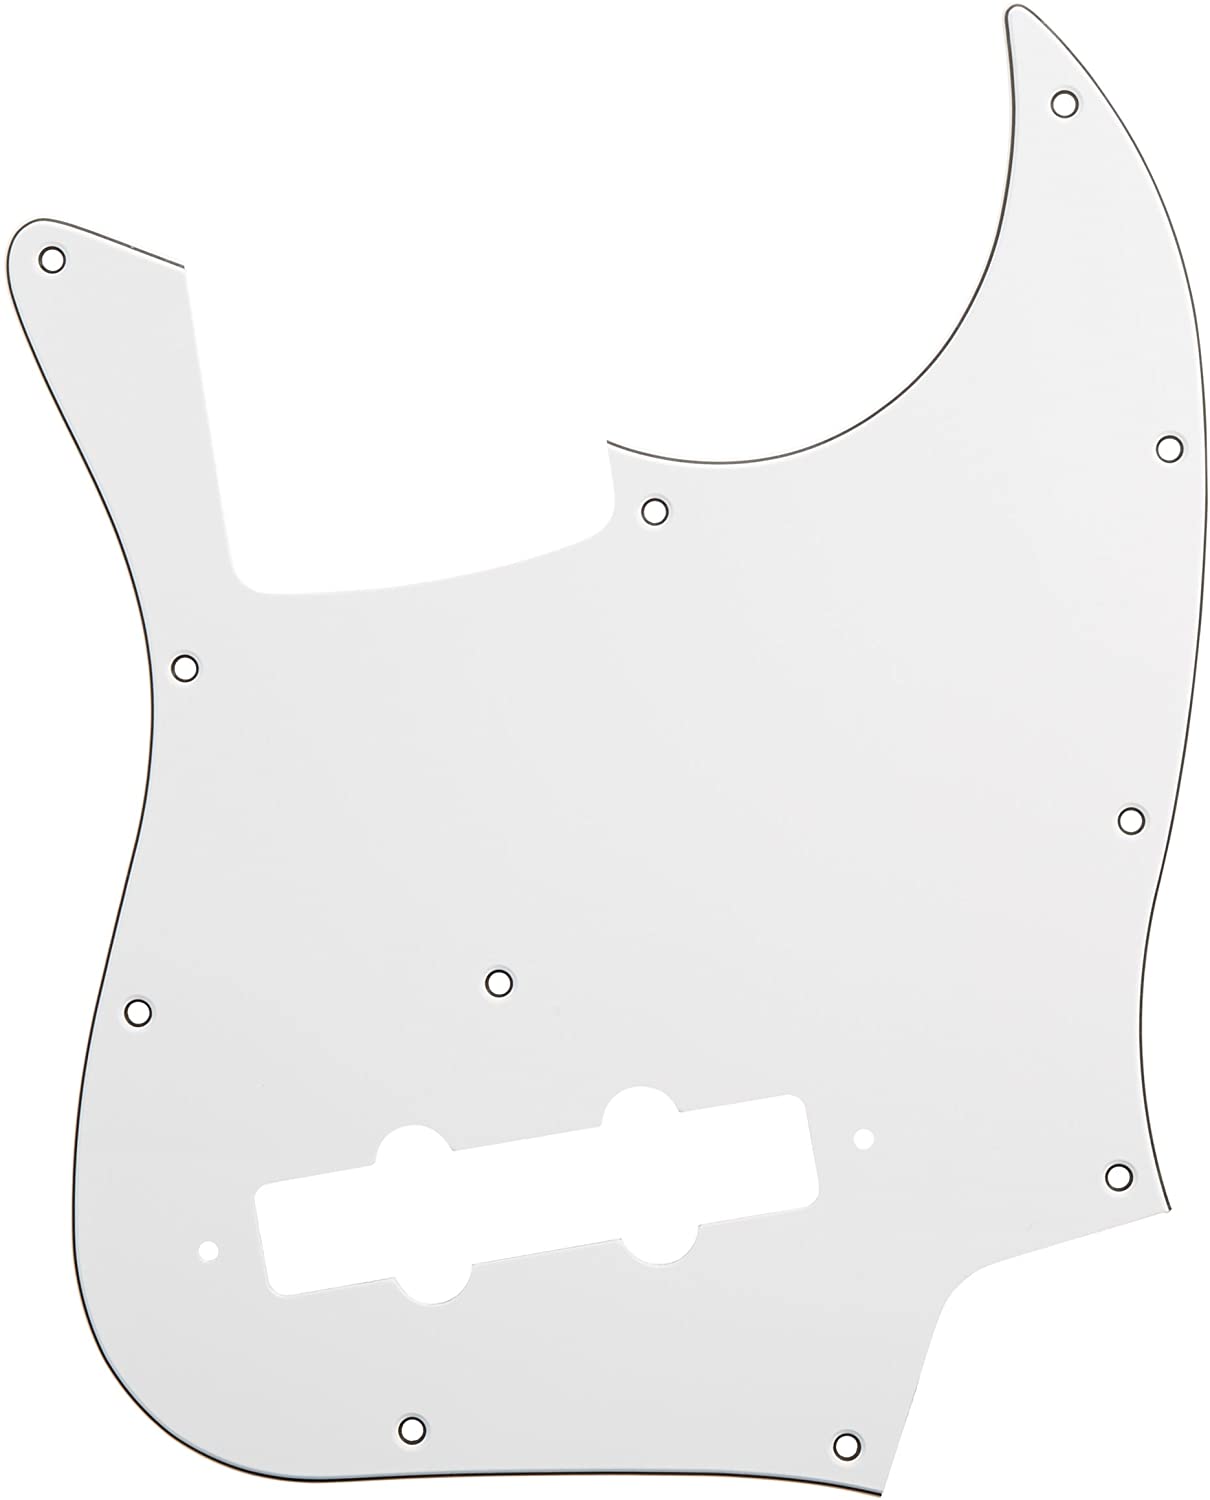 JBタイプピックガード JB-W3P JBタイプ ホワイト　3P ギターパーツに関する注意事項 ・ 商品画像はイメージになります。 カラー、サイズ等は商品名・商品説明文をご参照下さい。 ・ ギターパーツに関しては全て消耗品扱いとなり、保証対象外商品となります。 ・ サイズやカラーの注文間違いによる商品の返品・ご交換は一切お受け致しかねます。 ・ ギターパーツはメーカー取り寄せ商品となります。 ご注文後のキャンセルは一切お受け出来ませんのでご了承の上、ご注文下さい。